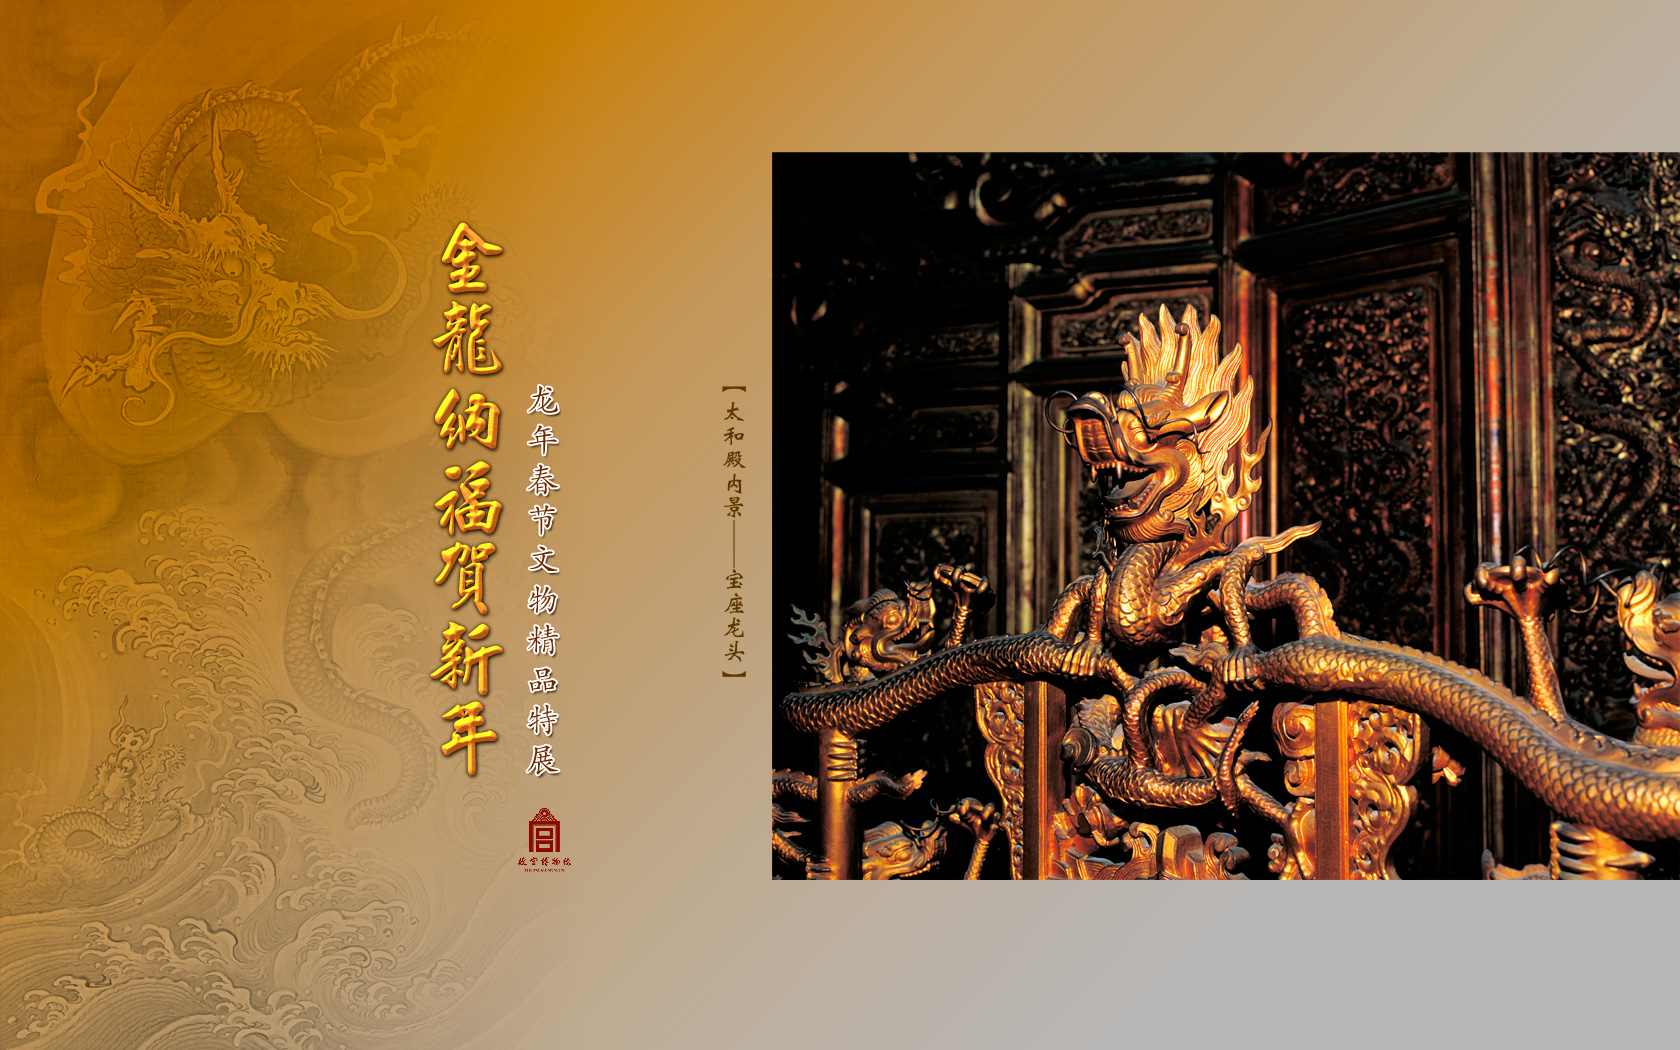 壁纸收藏标签: 2012年龙年春节文物精品展墙纸——太和殿内景宝座龙头